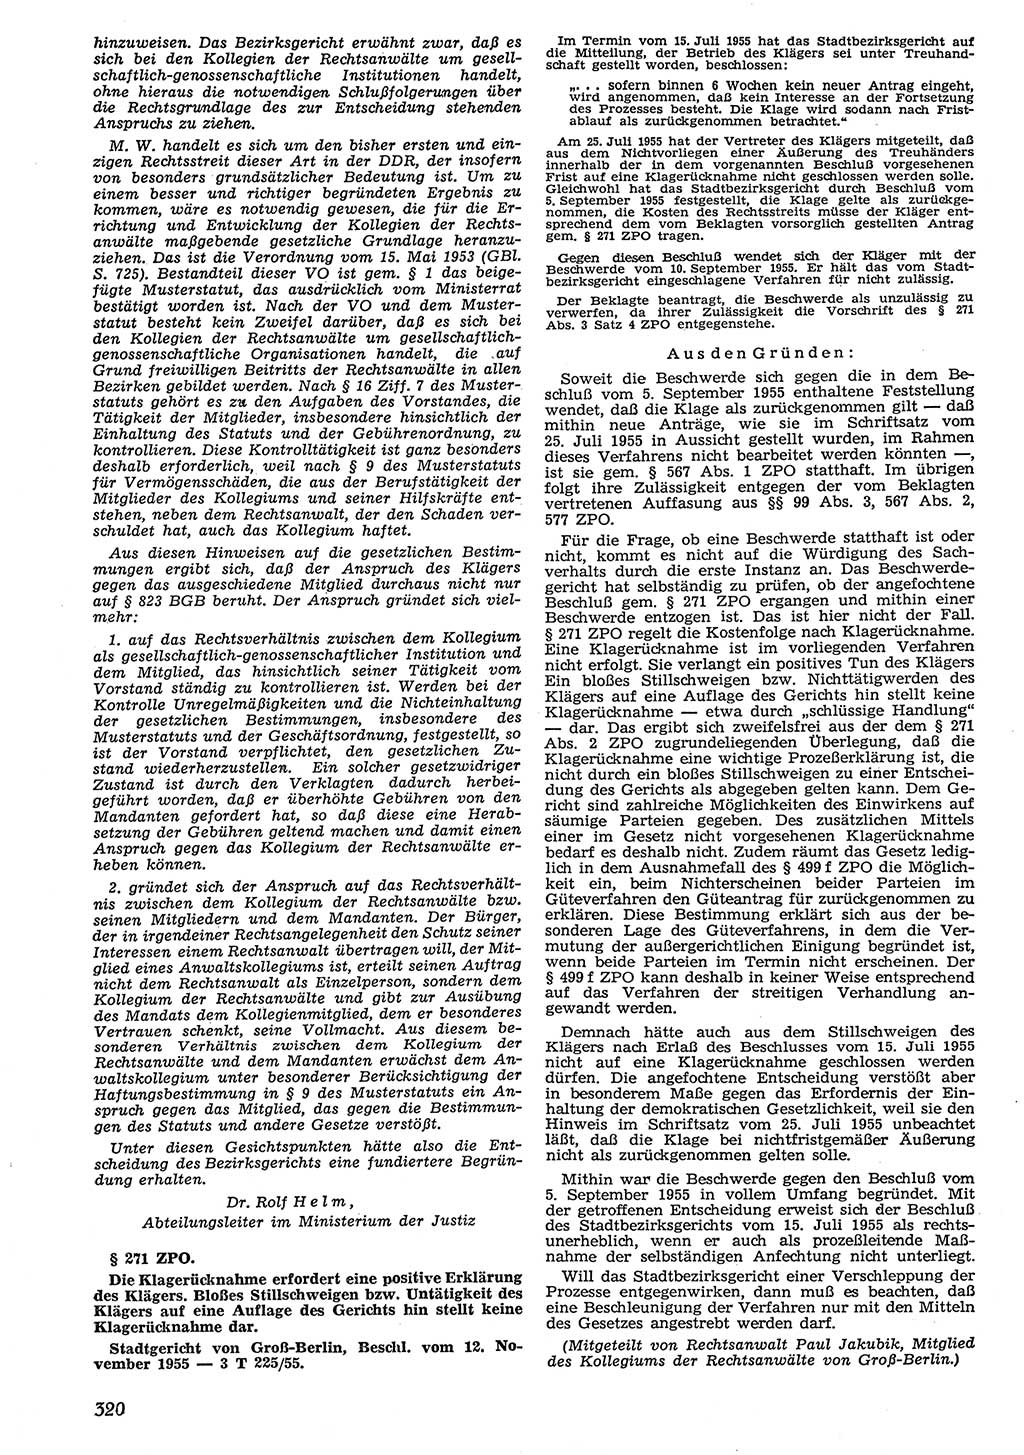 Neue Justiz (NJ), Zeitschrift für Recht und Rechtswissenschaft [Deutsche Demokratische Republik (DDR)], 10. Jahrgang 1956, Seite 320 (NJ DDR 1956, S. 320)